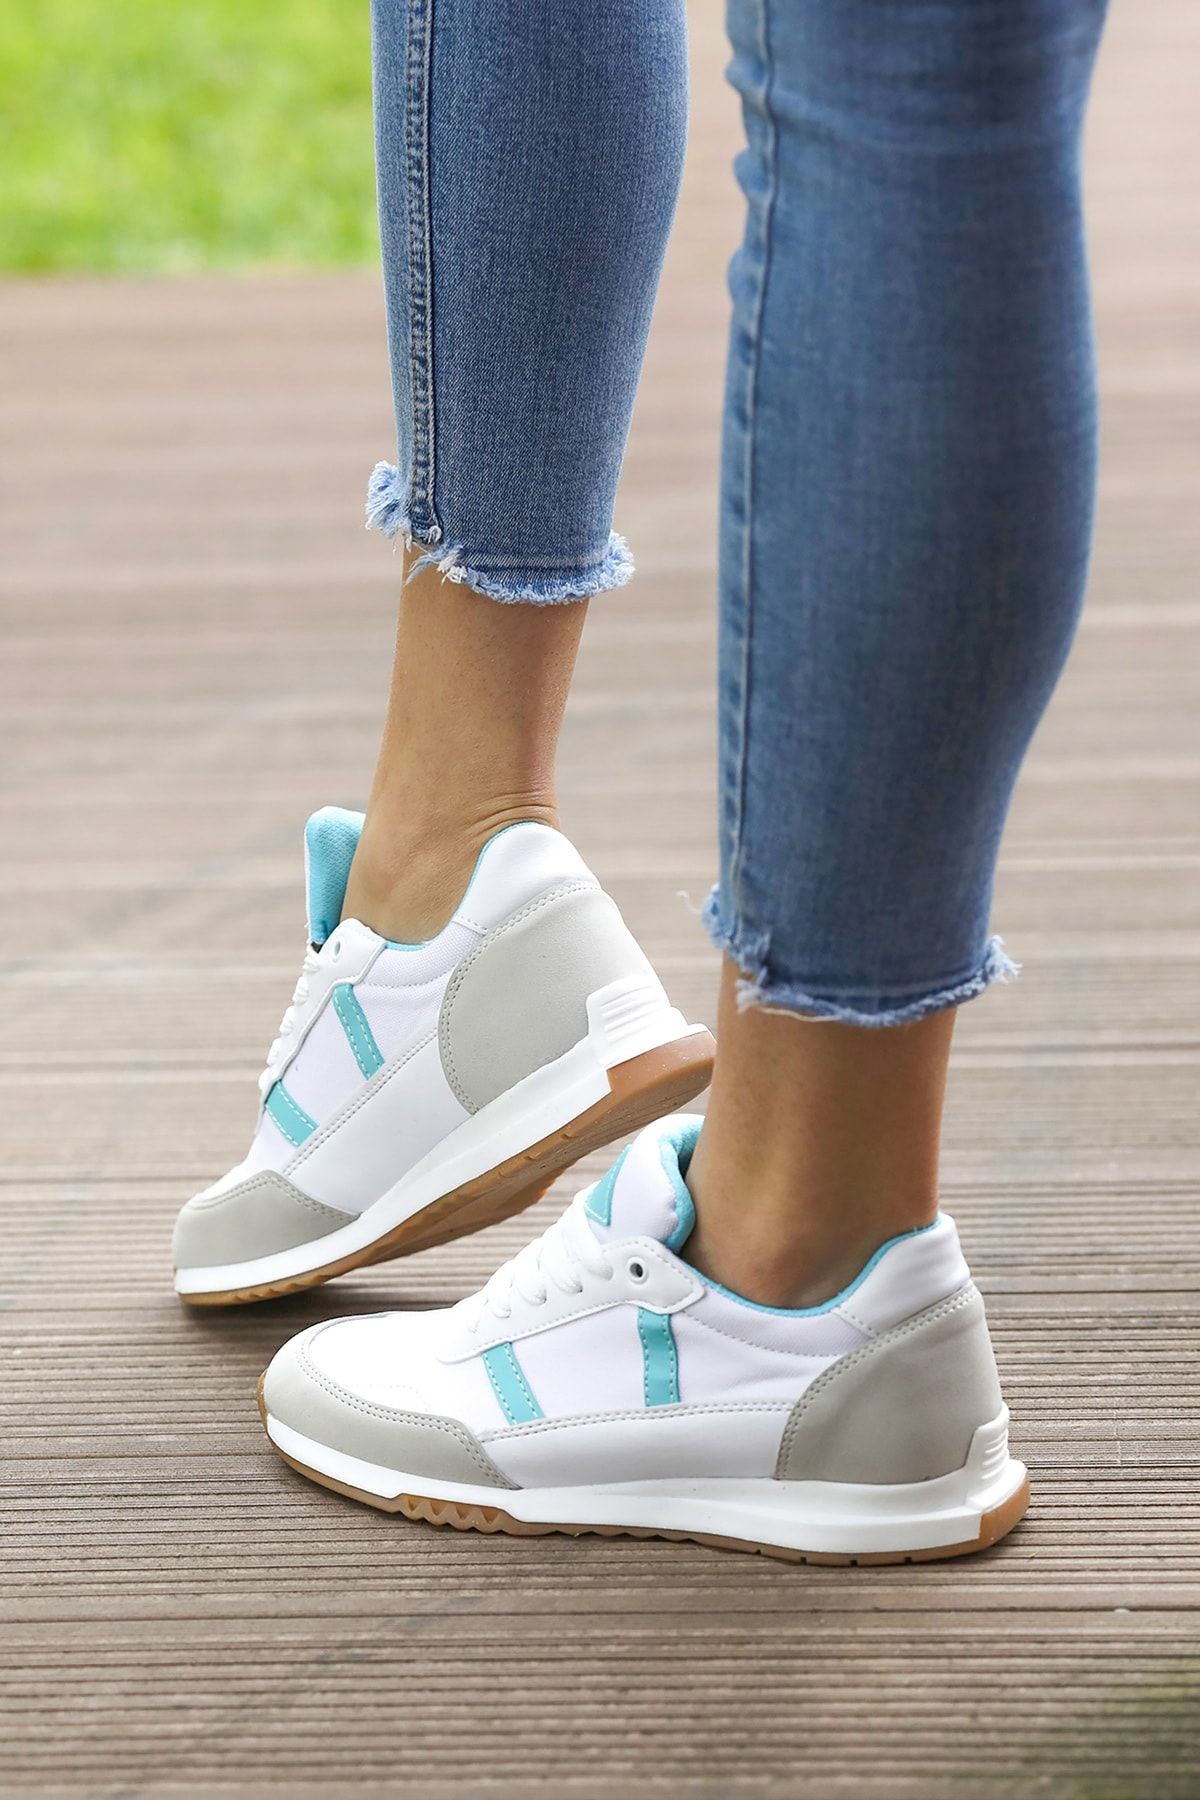 Tripy Kadın Bağcıklı Turkuaz Şeritli Günlük Beyaz Sneaker Spor Ayakkabı